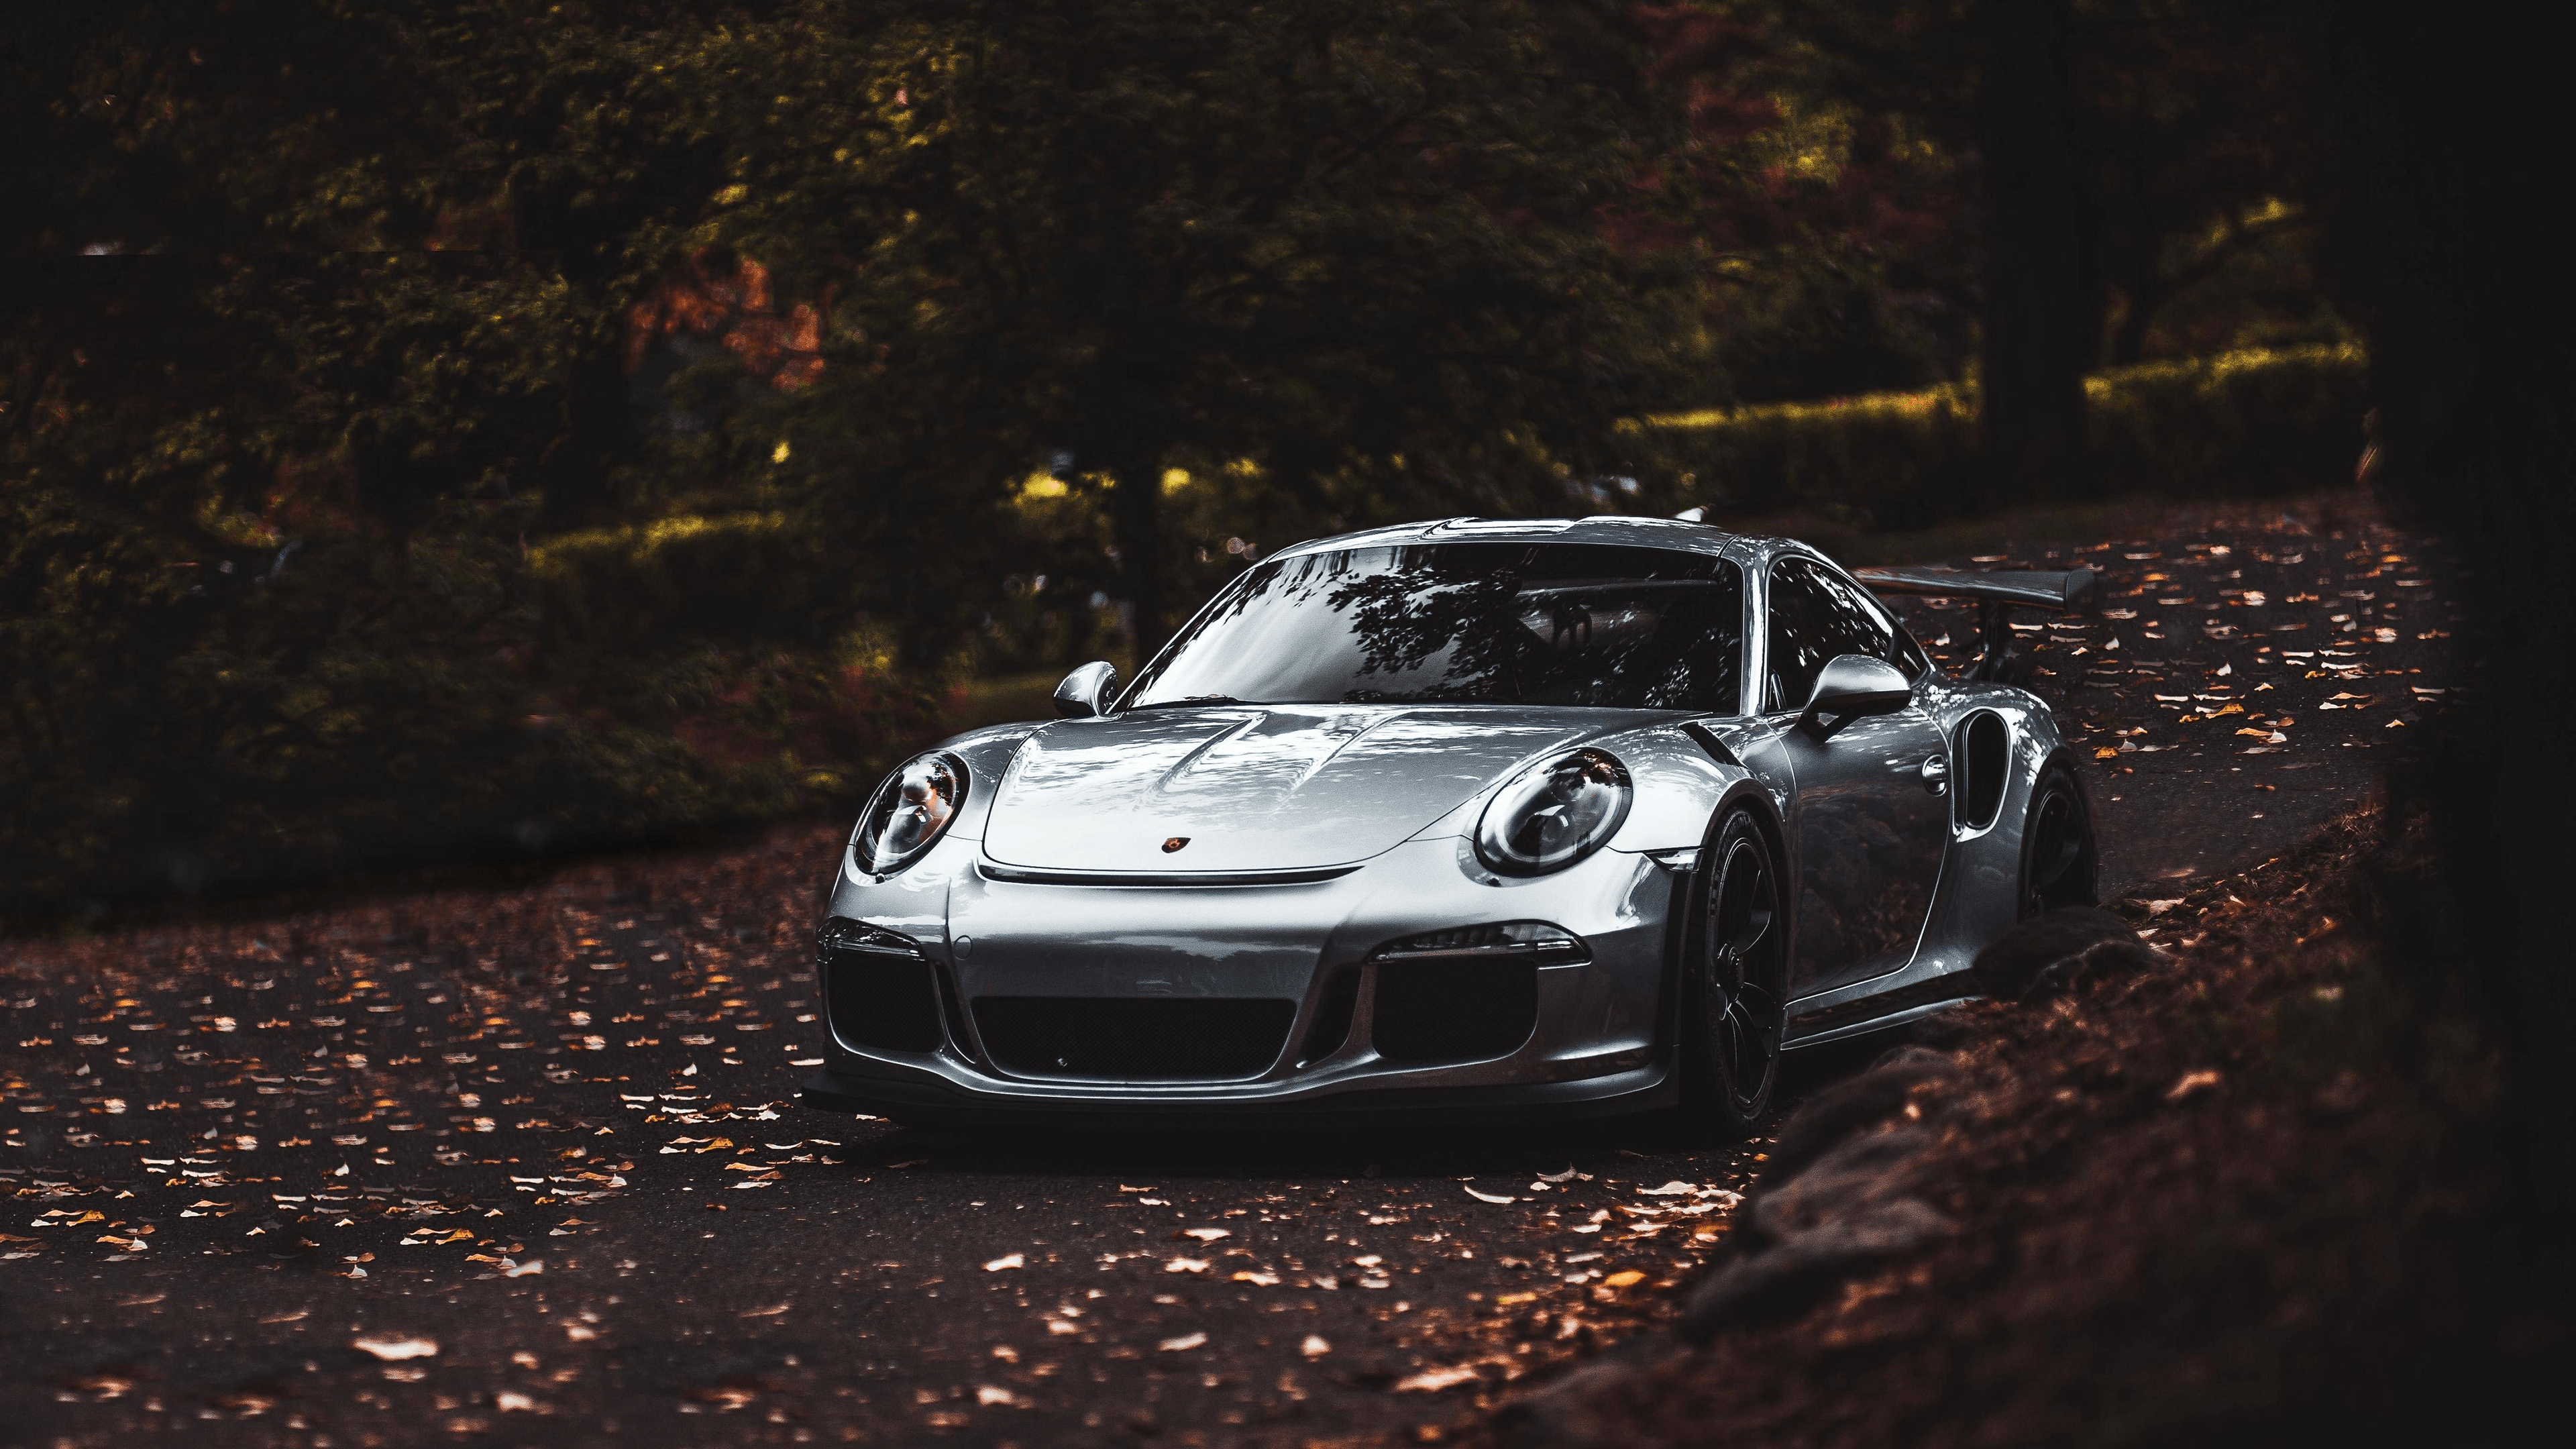 Porsche 911 Desktop Wallpaper